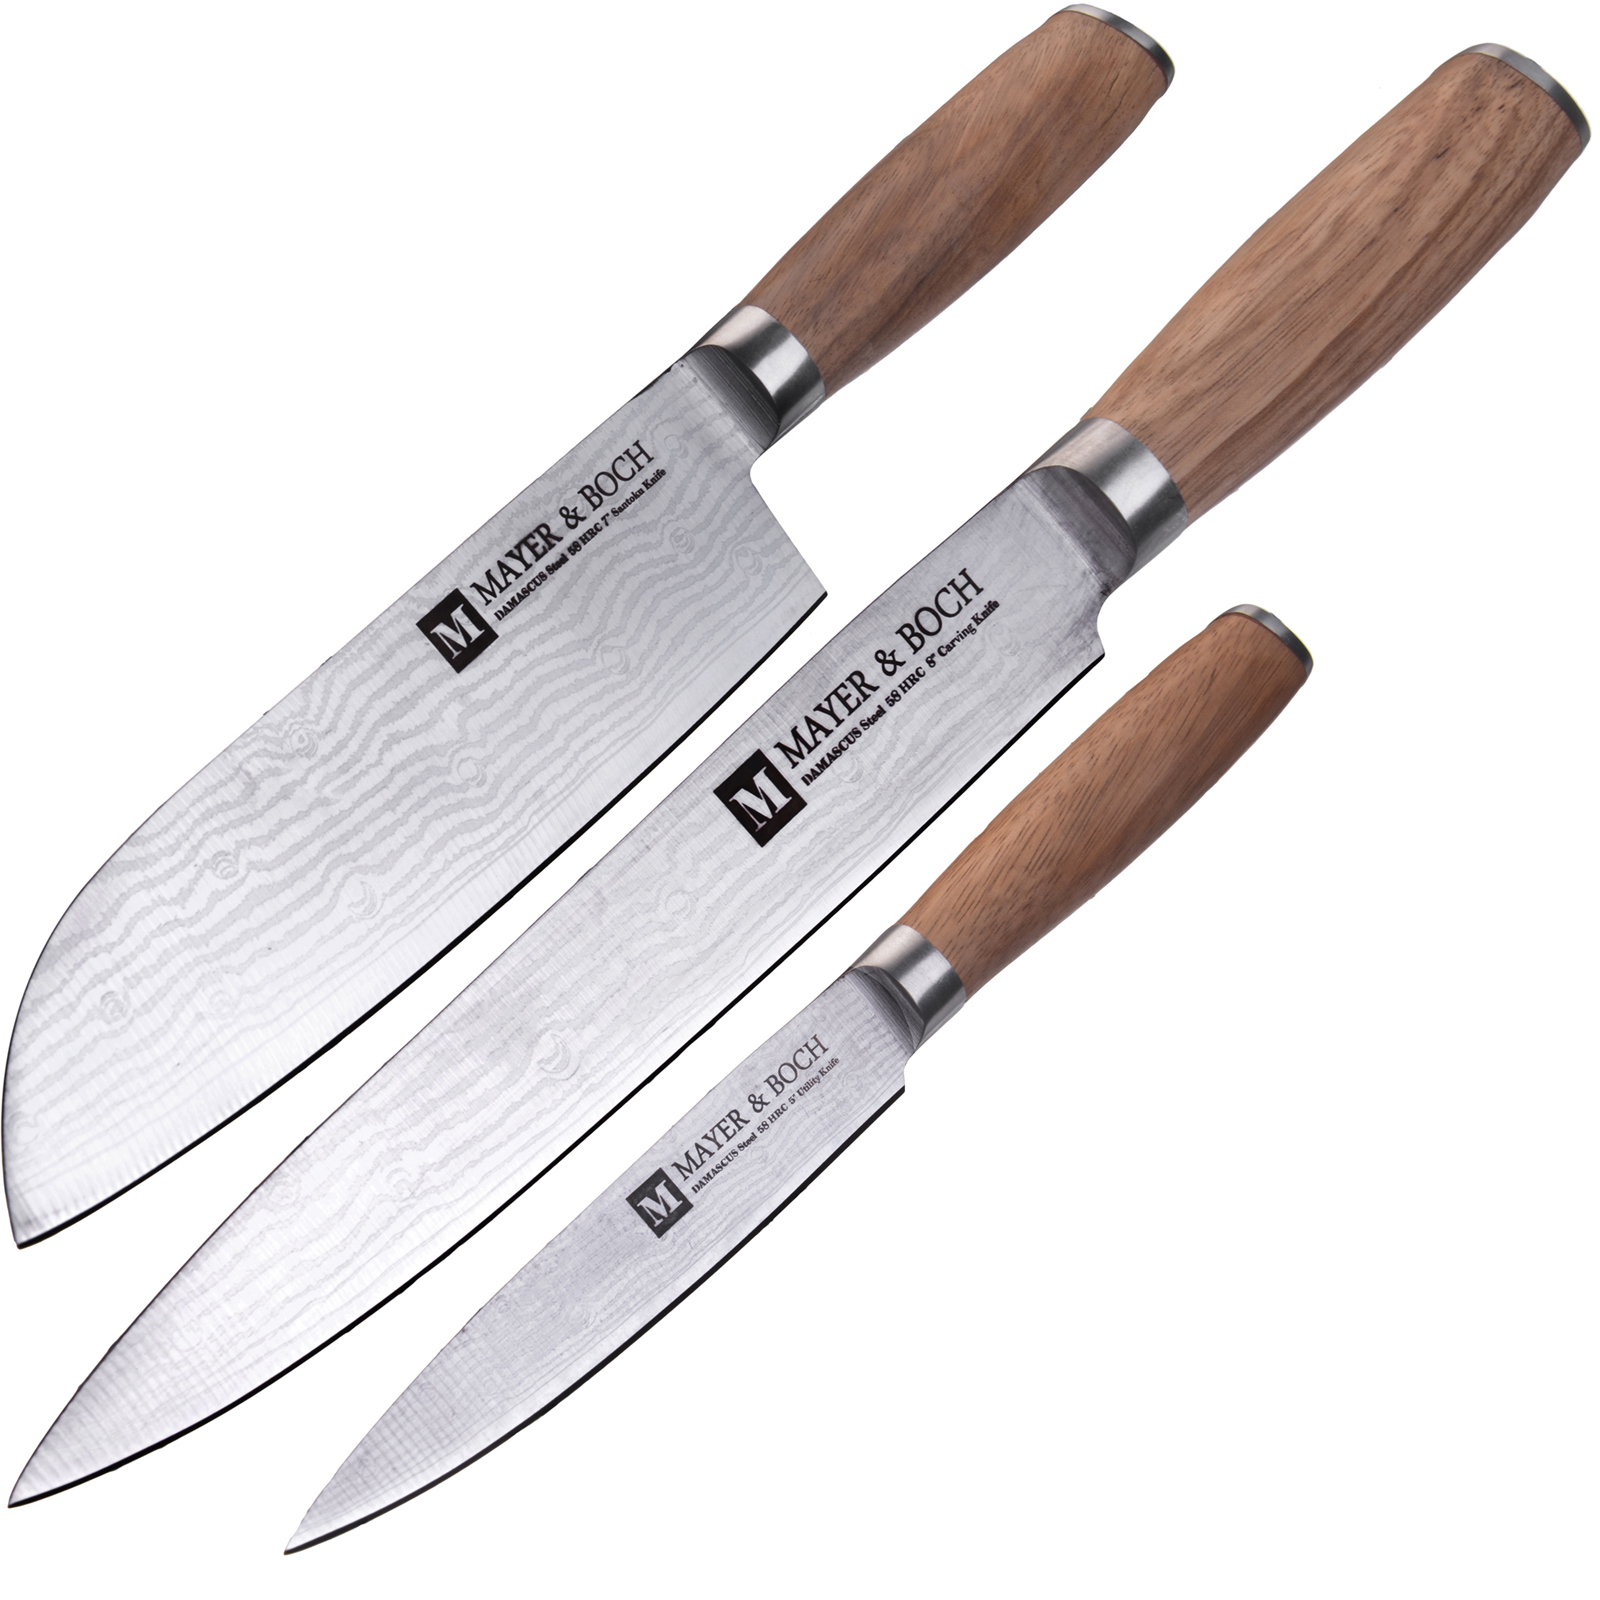 Набор ножей Mayer & Boch, цвет: серебристый, коричневый, 3 шт